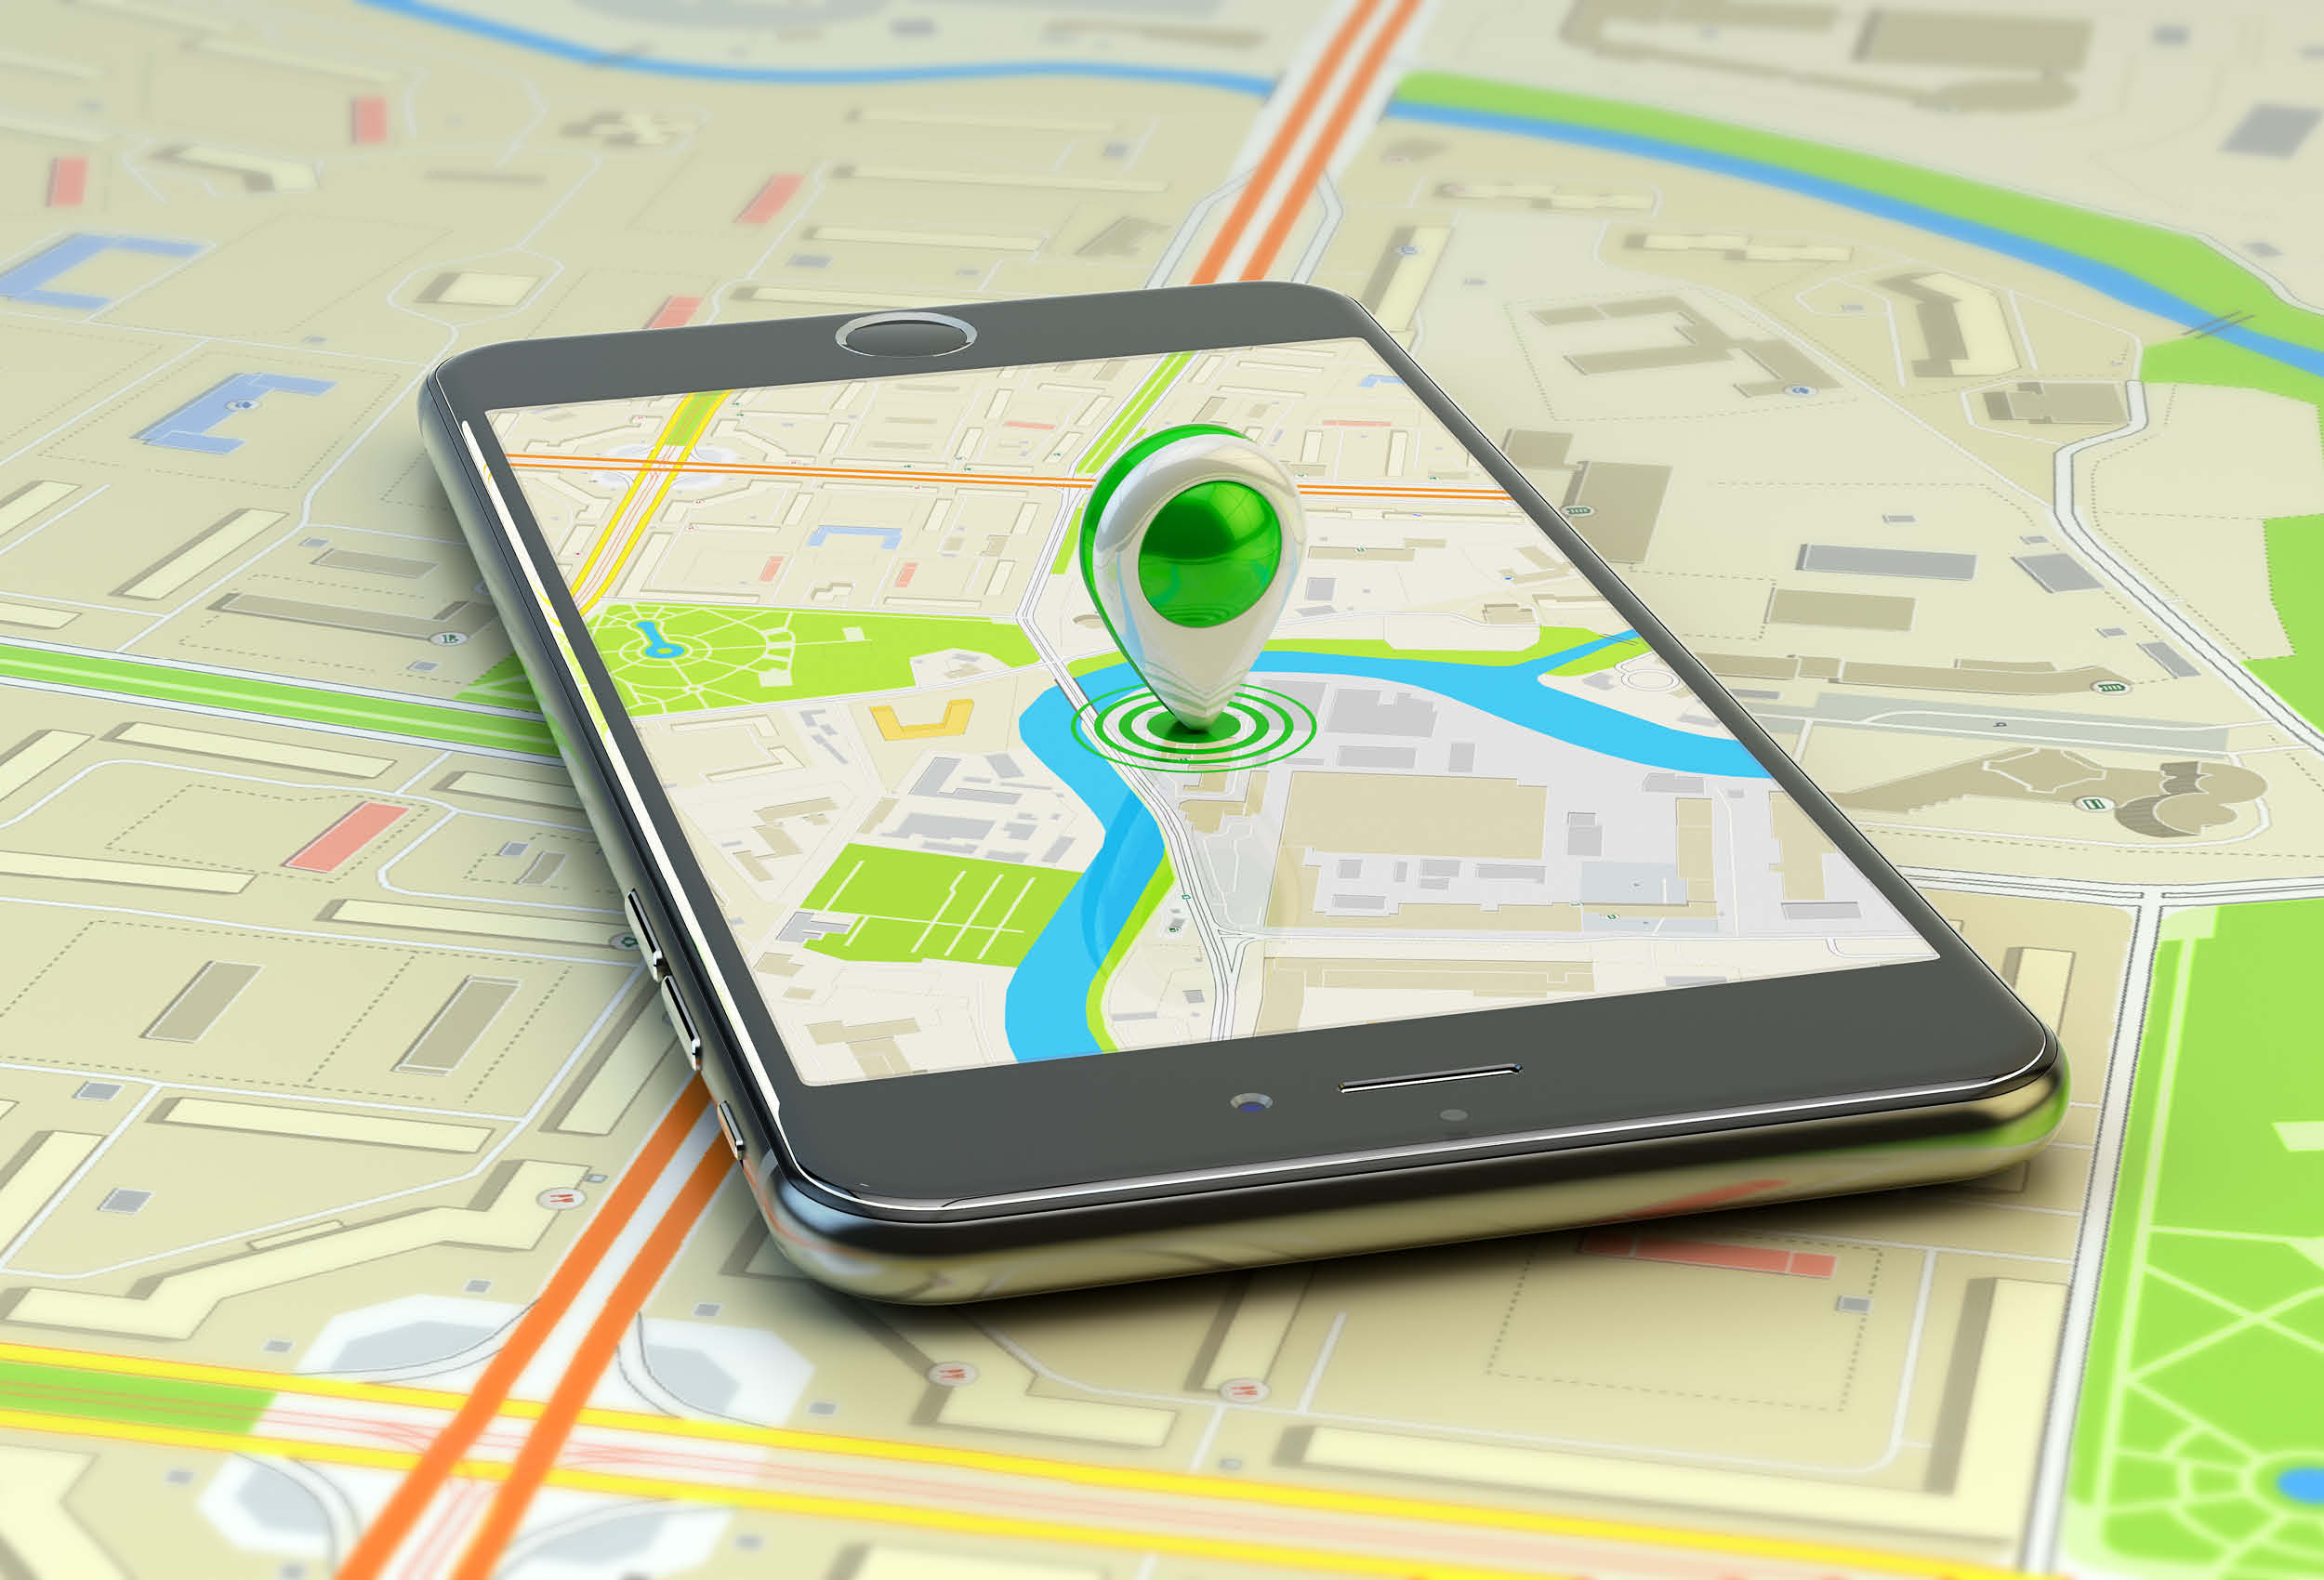 Местоположение работников. GPS В смартфоне. Навигатор в телефоне. Мобильные ГИС приложения. GPS слежение.